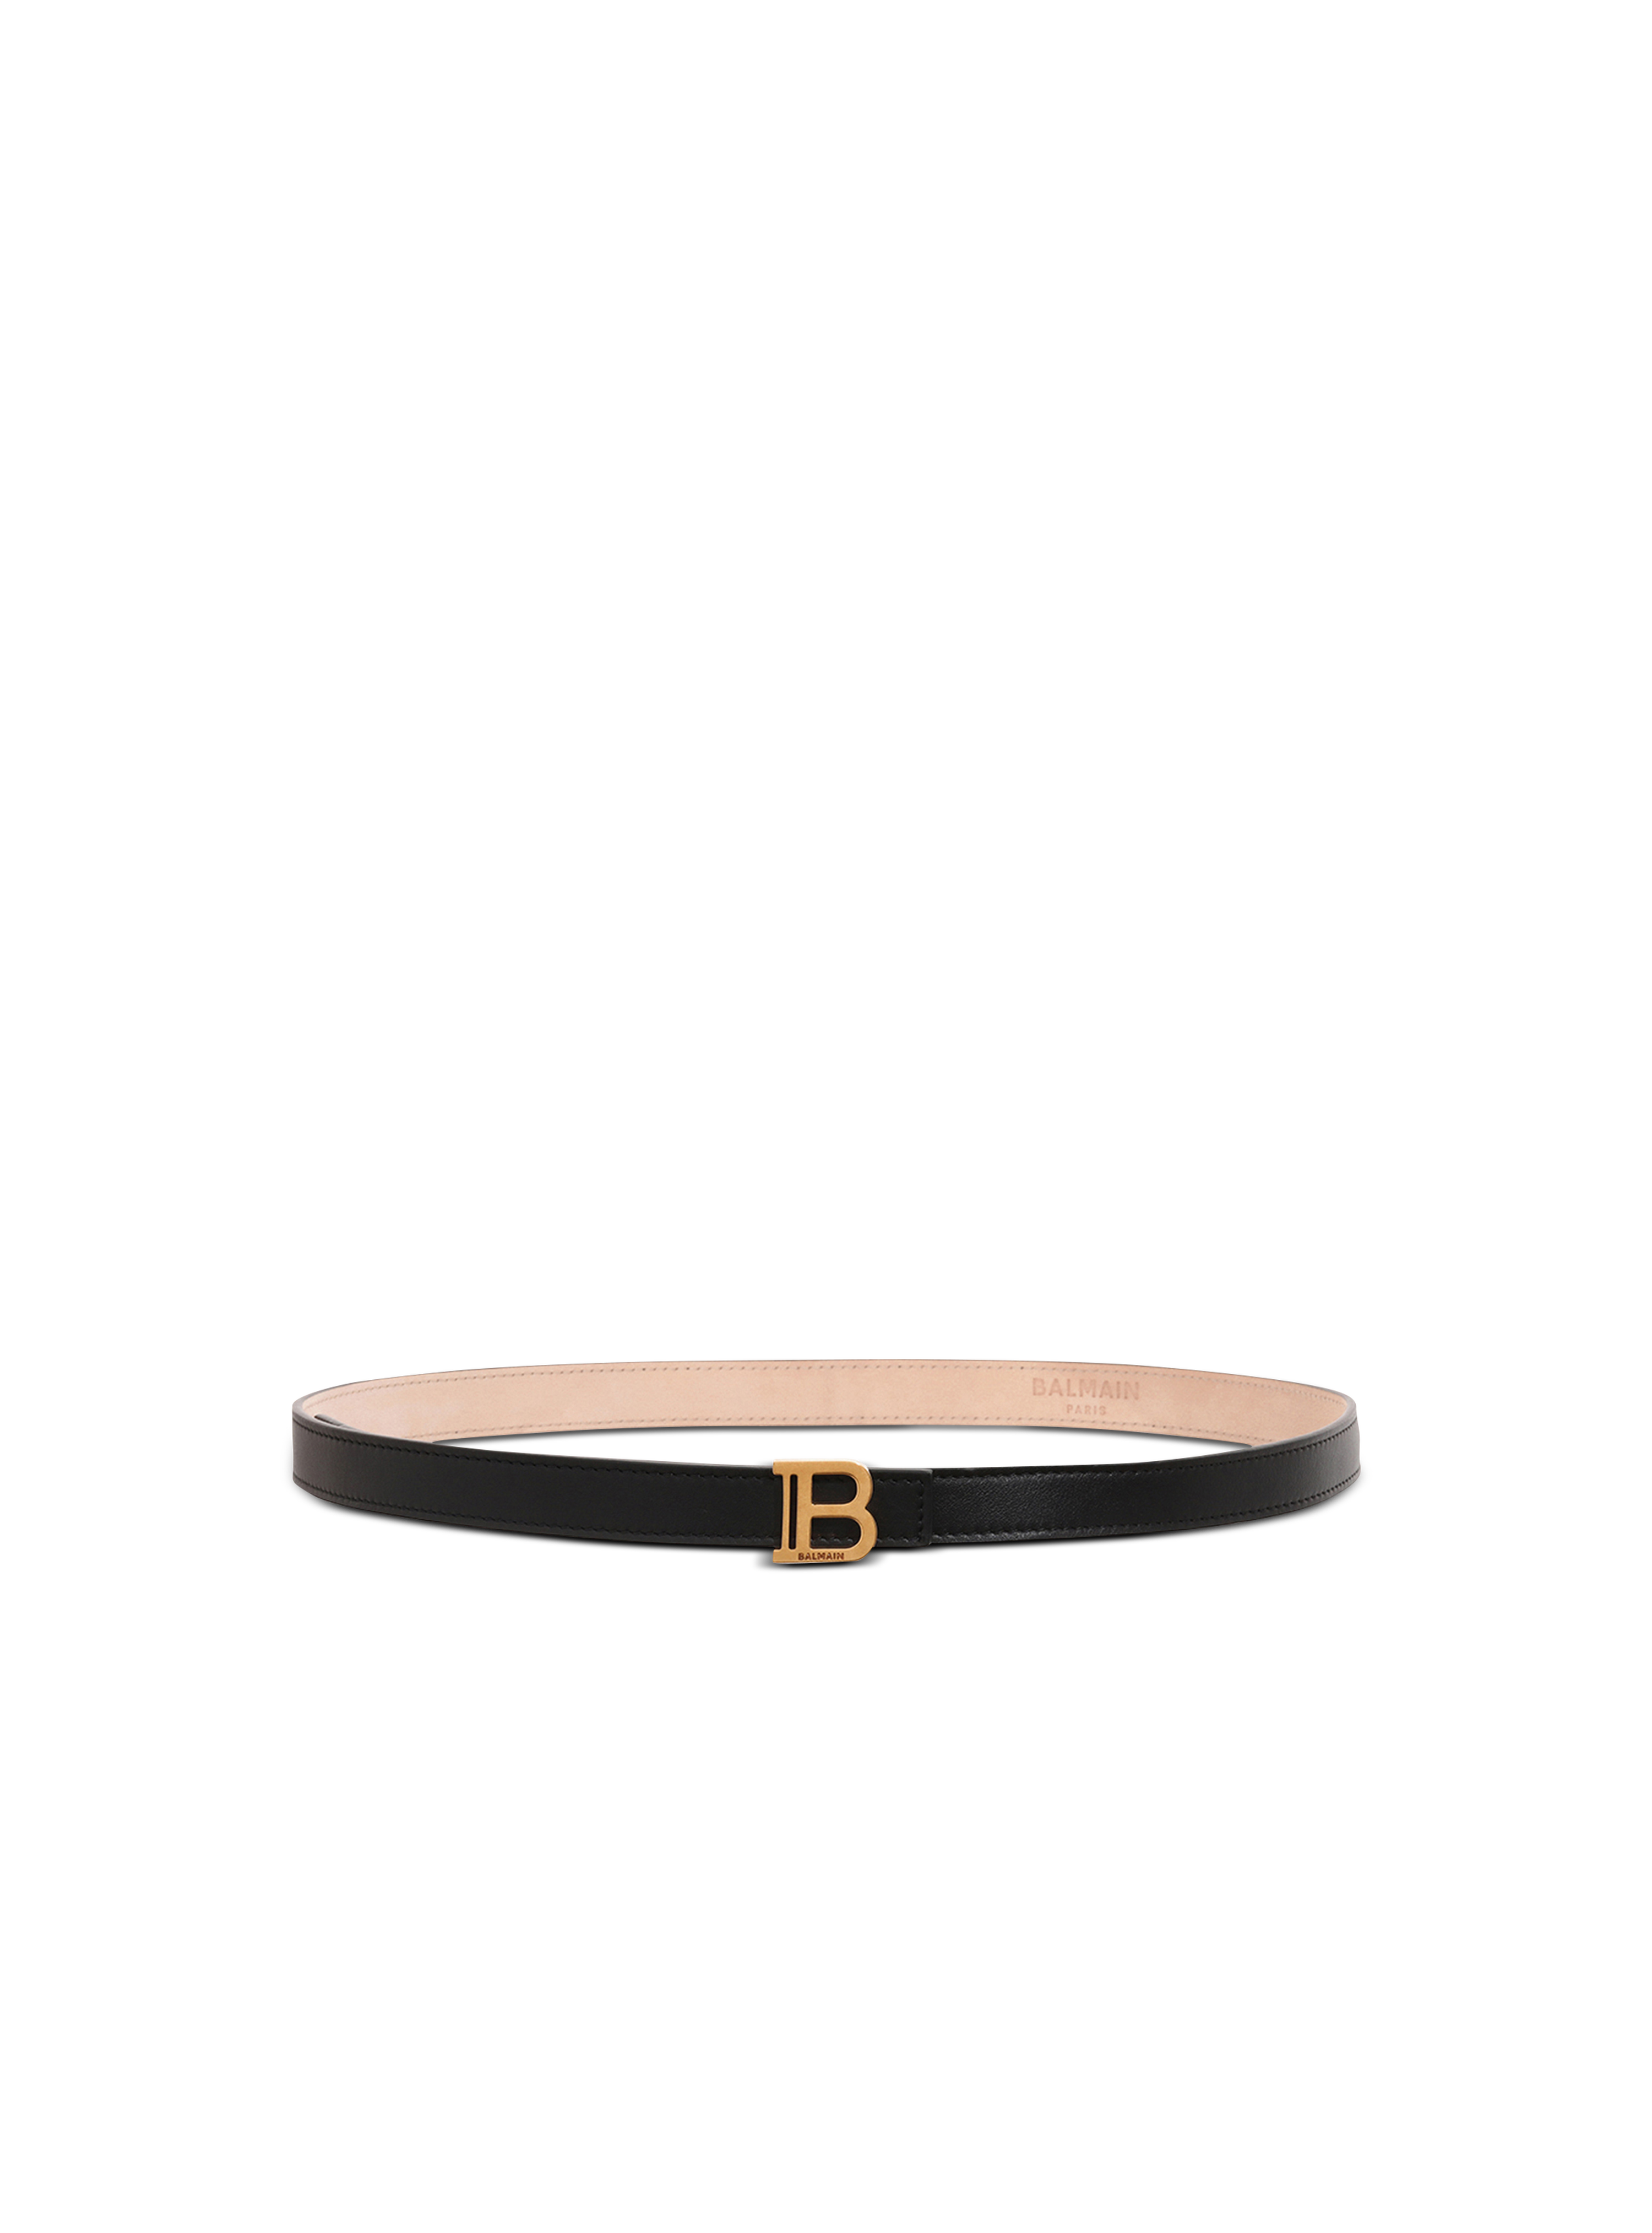 Smooth leather B-Belt belt, black